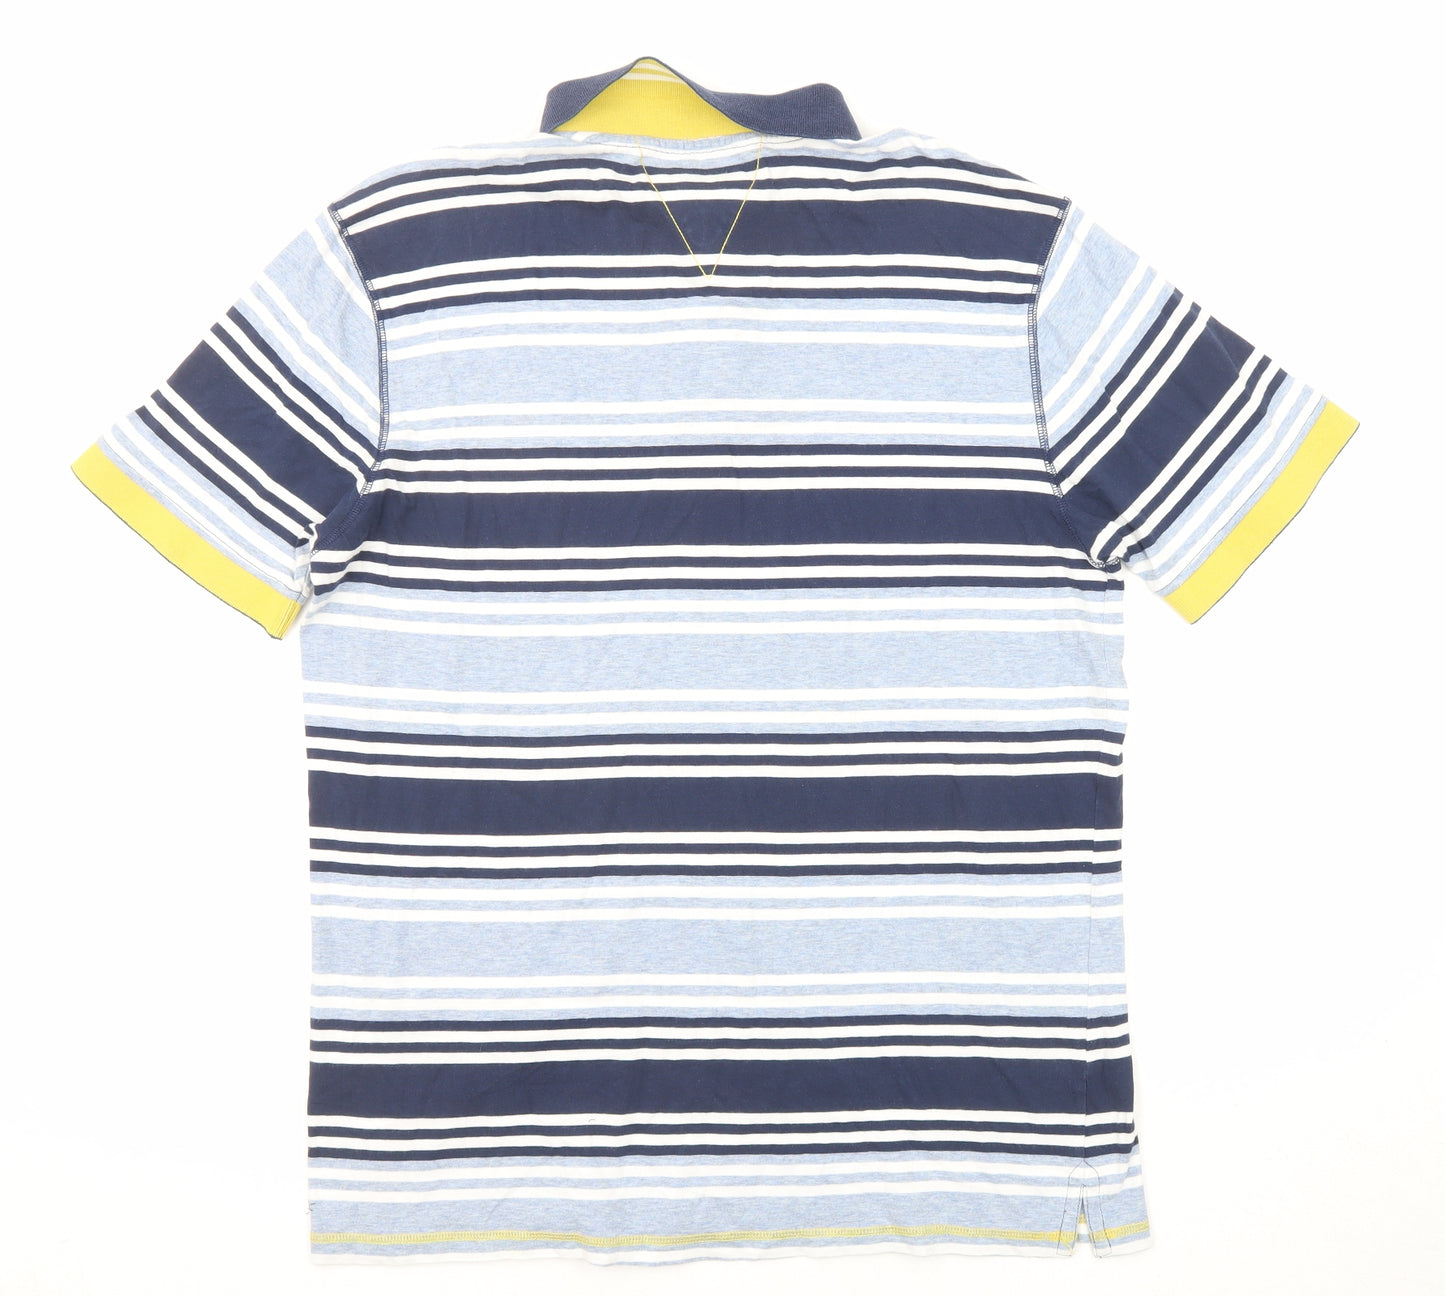 White Stuff Mens Blue Striped Cotton Polo Size M Collared Button